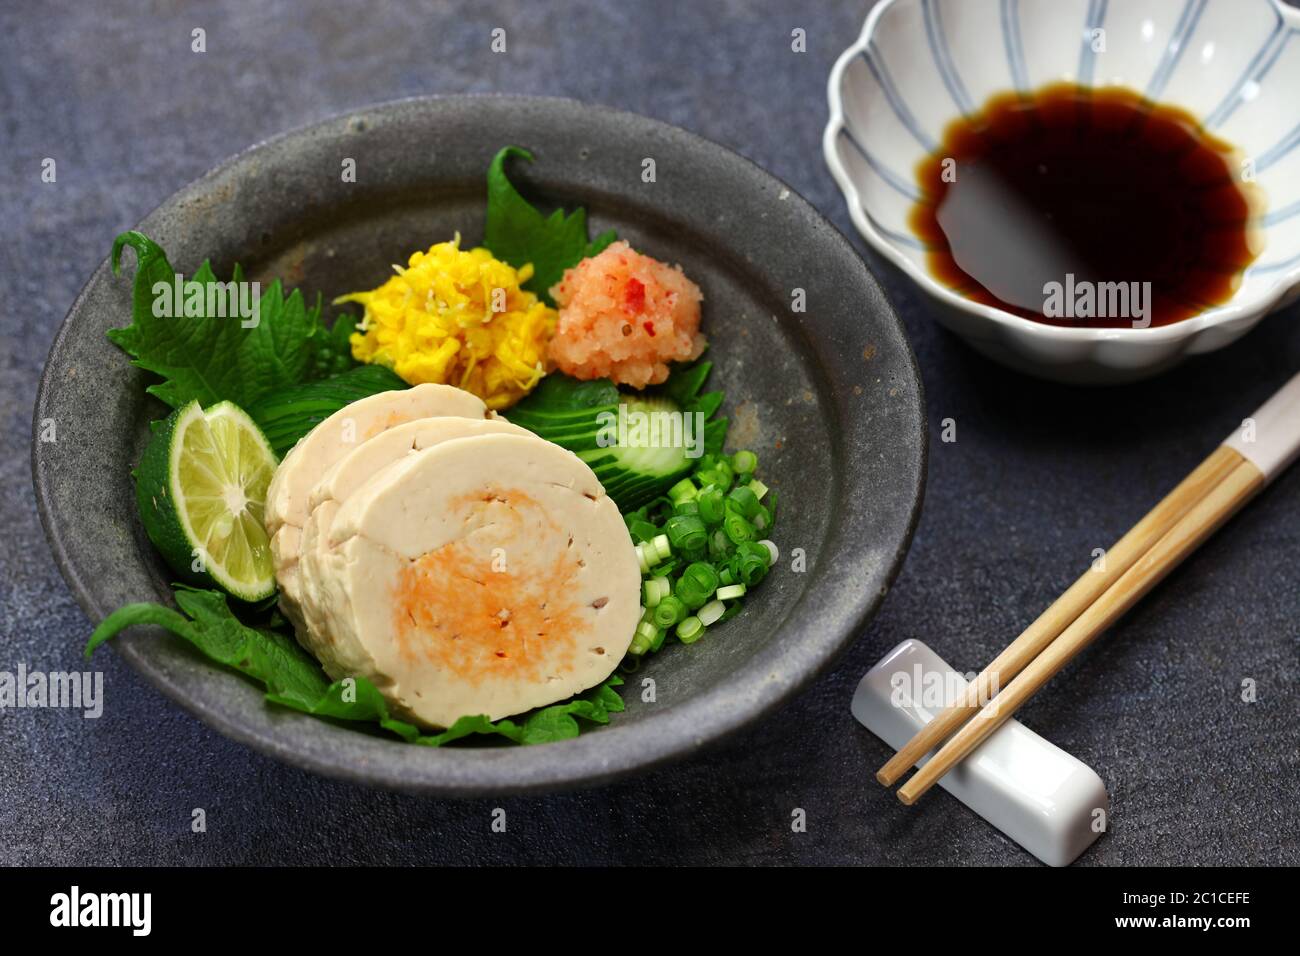 l'ankimo est un plat japonais fait avec du foie de lotte. Banque D'Images